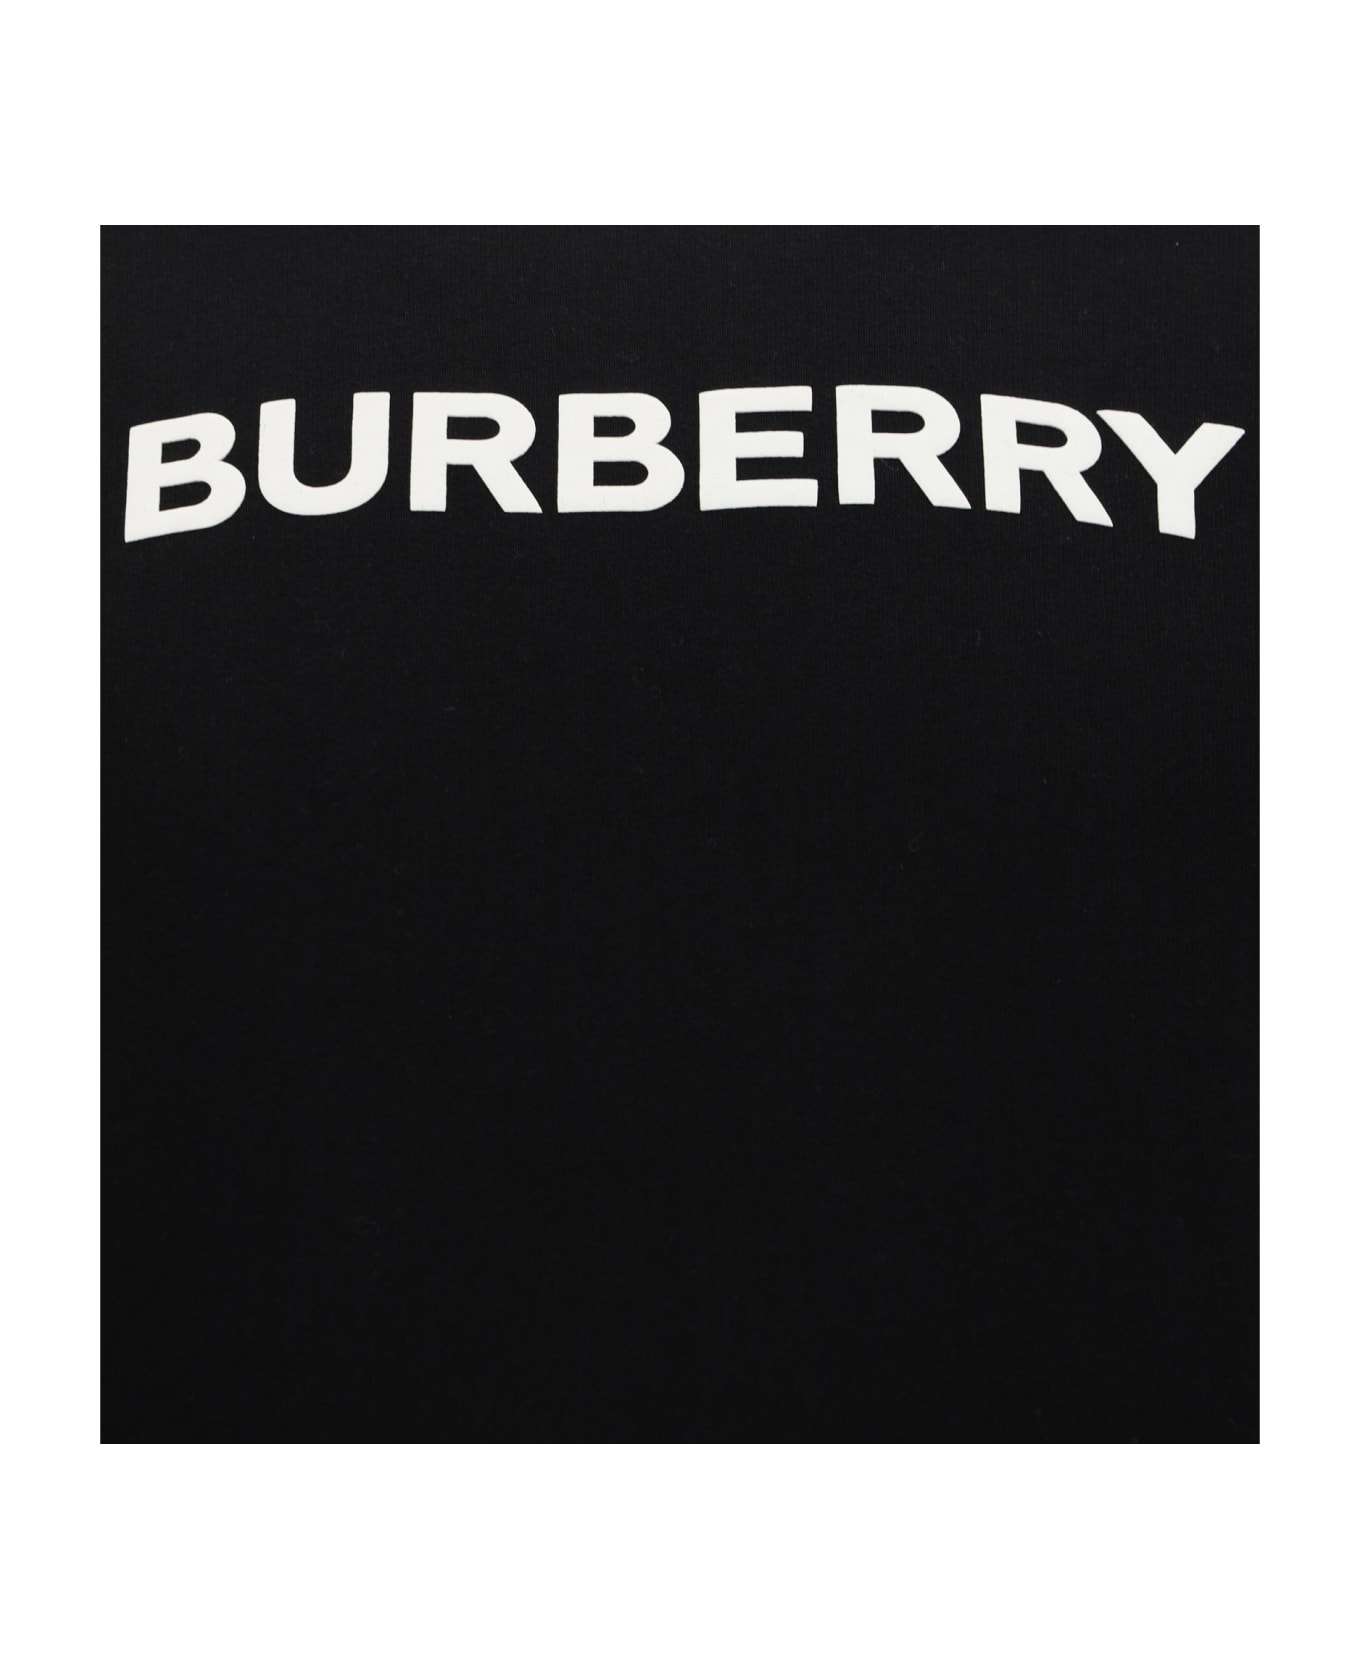 Burberry Burlow Sweatshirt - Black